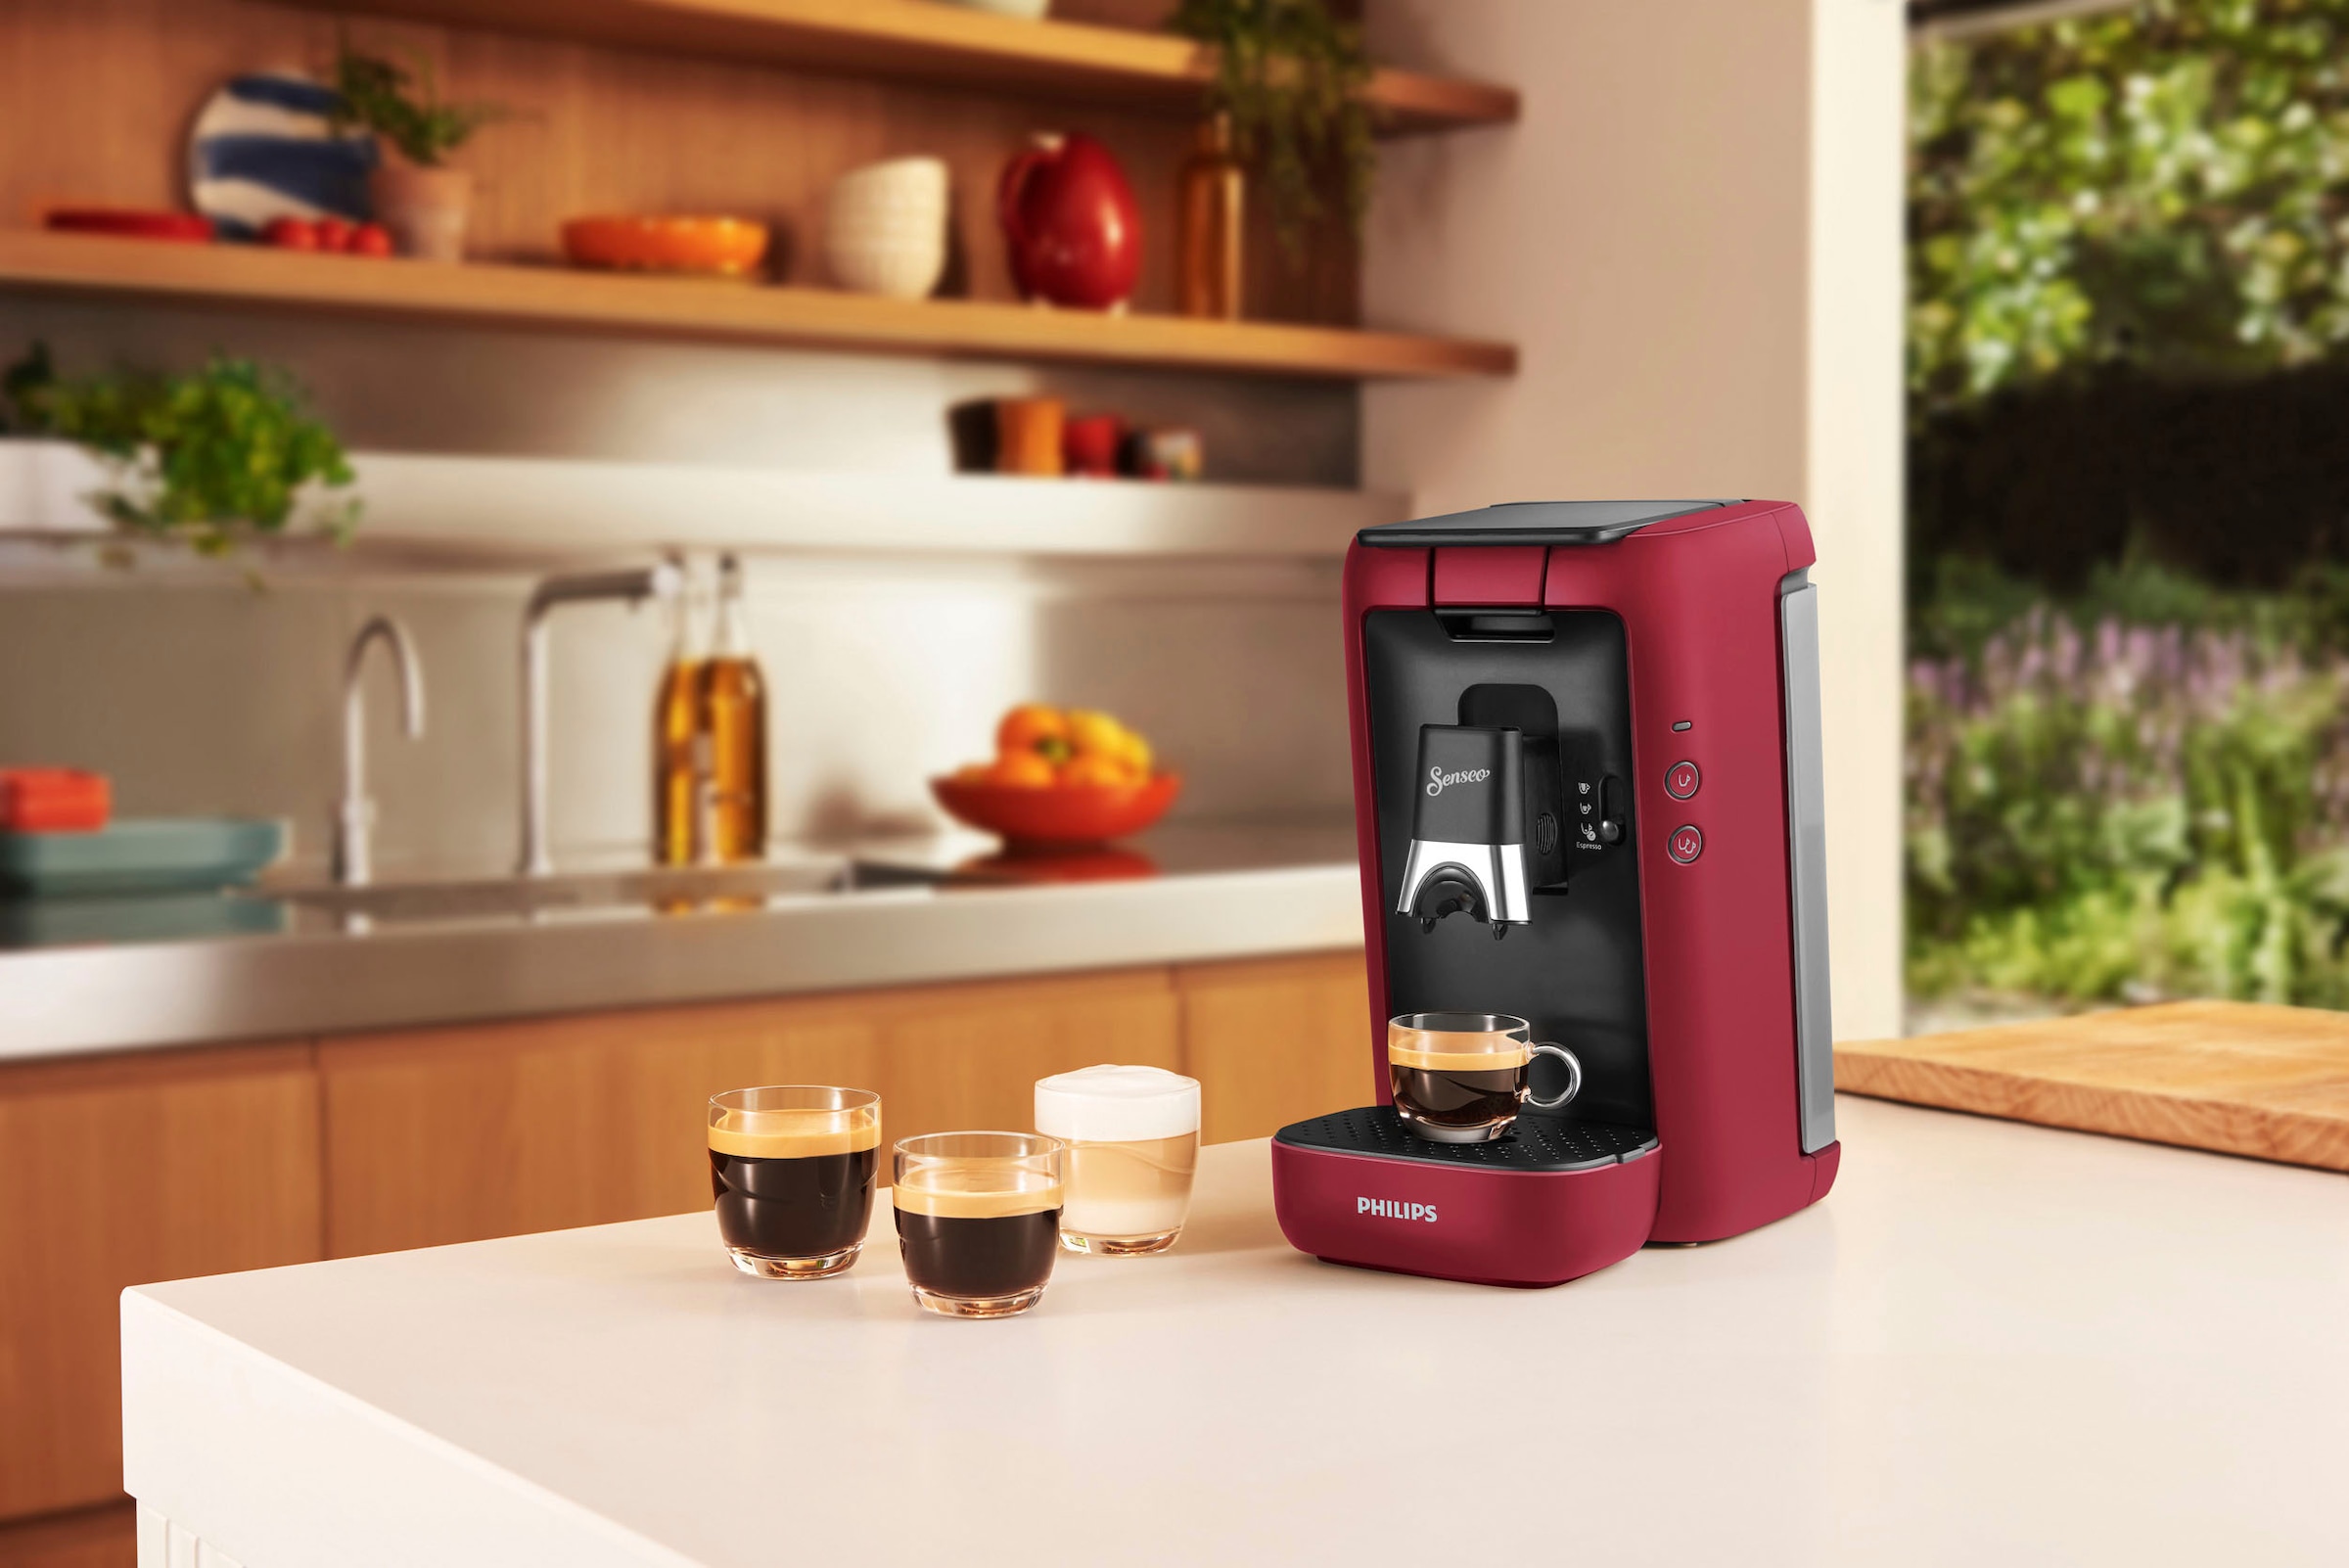 Philips Senseo Kaffeepadmaschine »Maestro CSA260/90, aus 80% recyceltem  Plastik, +3 Kaffeespezialitäten«, Memo-Funktion, inkl. Gratis-Zugaben im  Wert von € 14,- UVP online bestellen